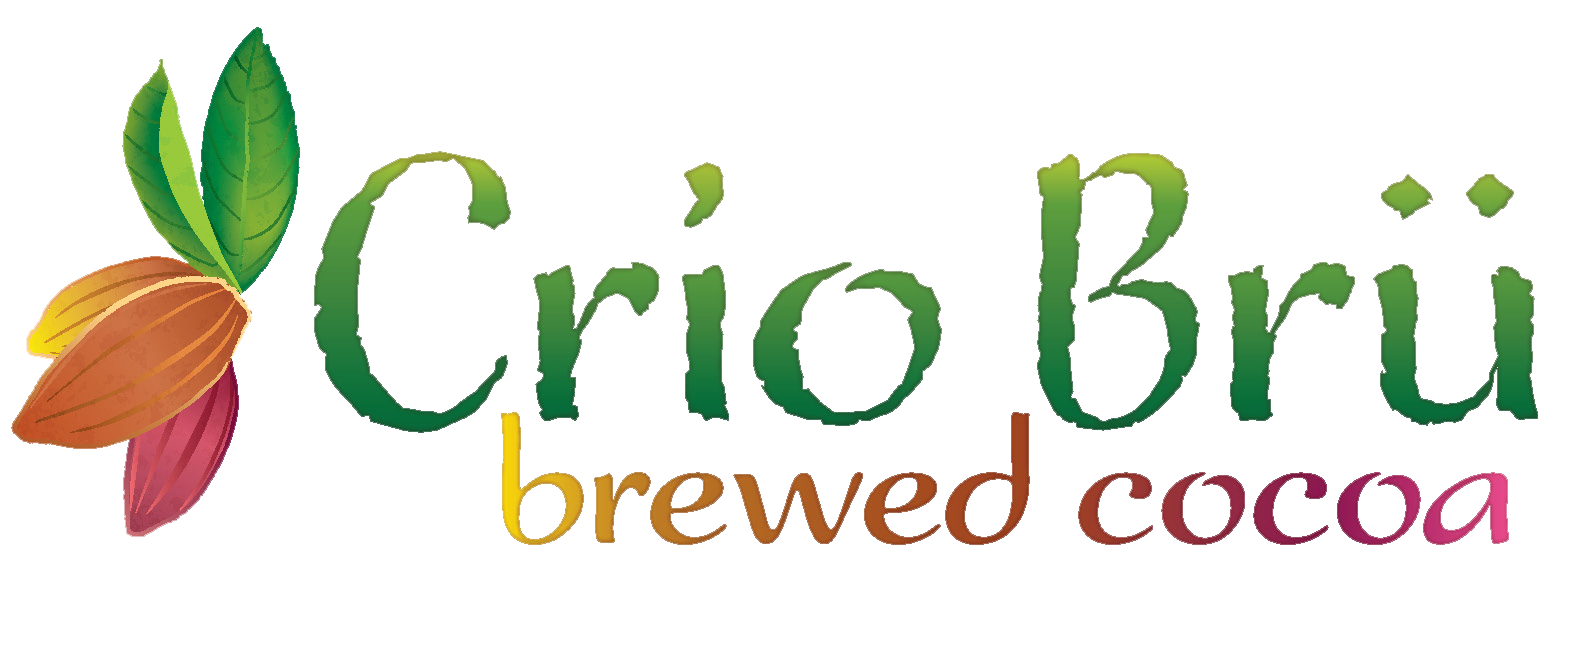 crio-bru-logo.png